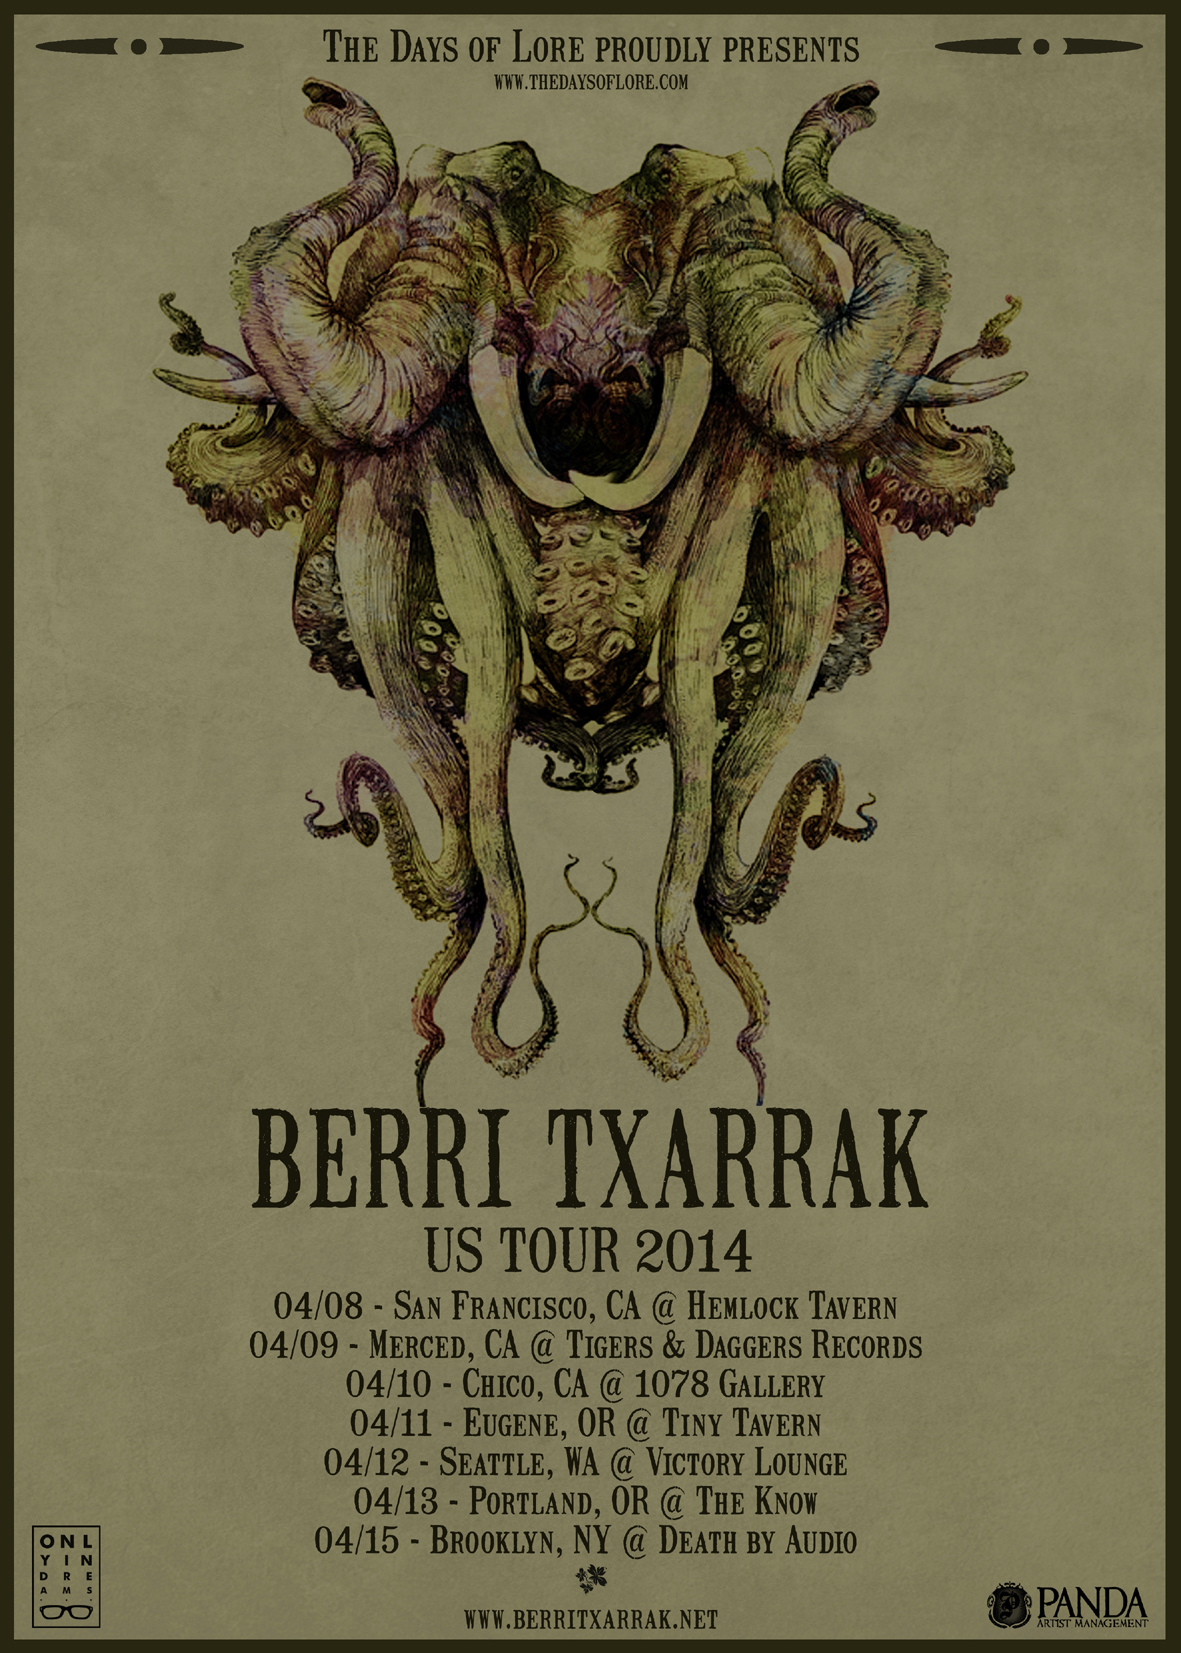 BERRI TXARRAK USA TOUR 2014 EN ABRIL